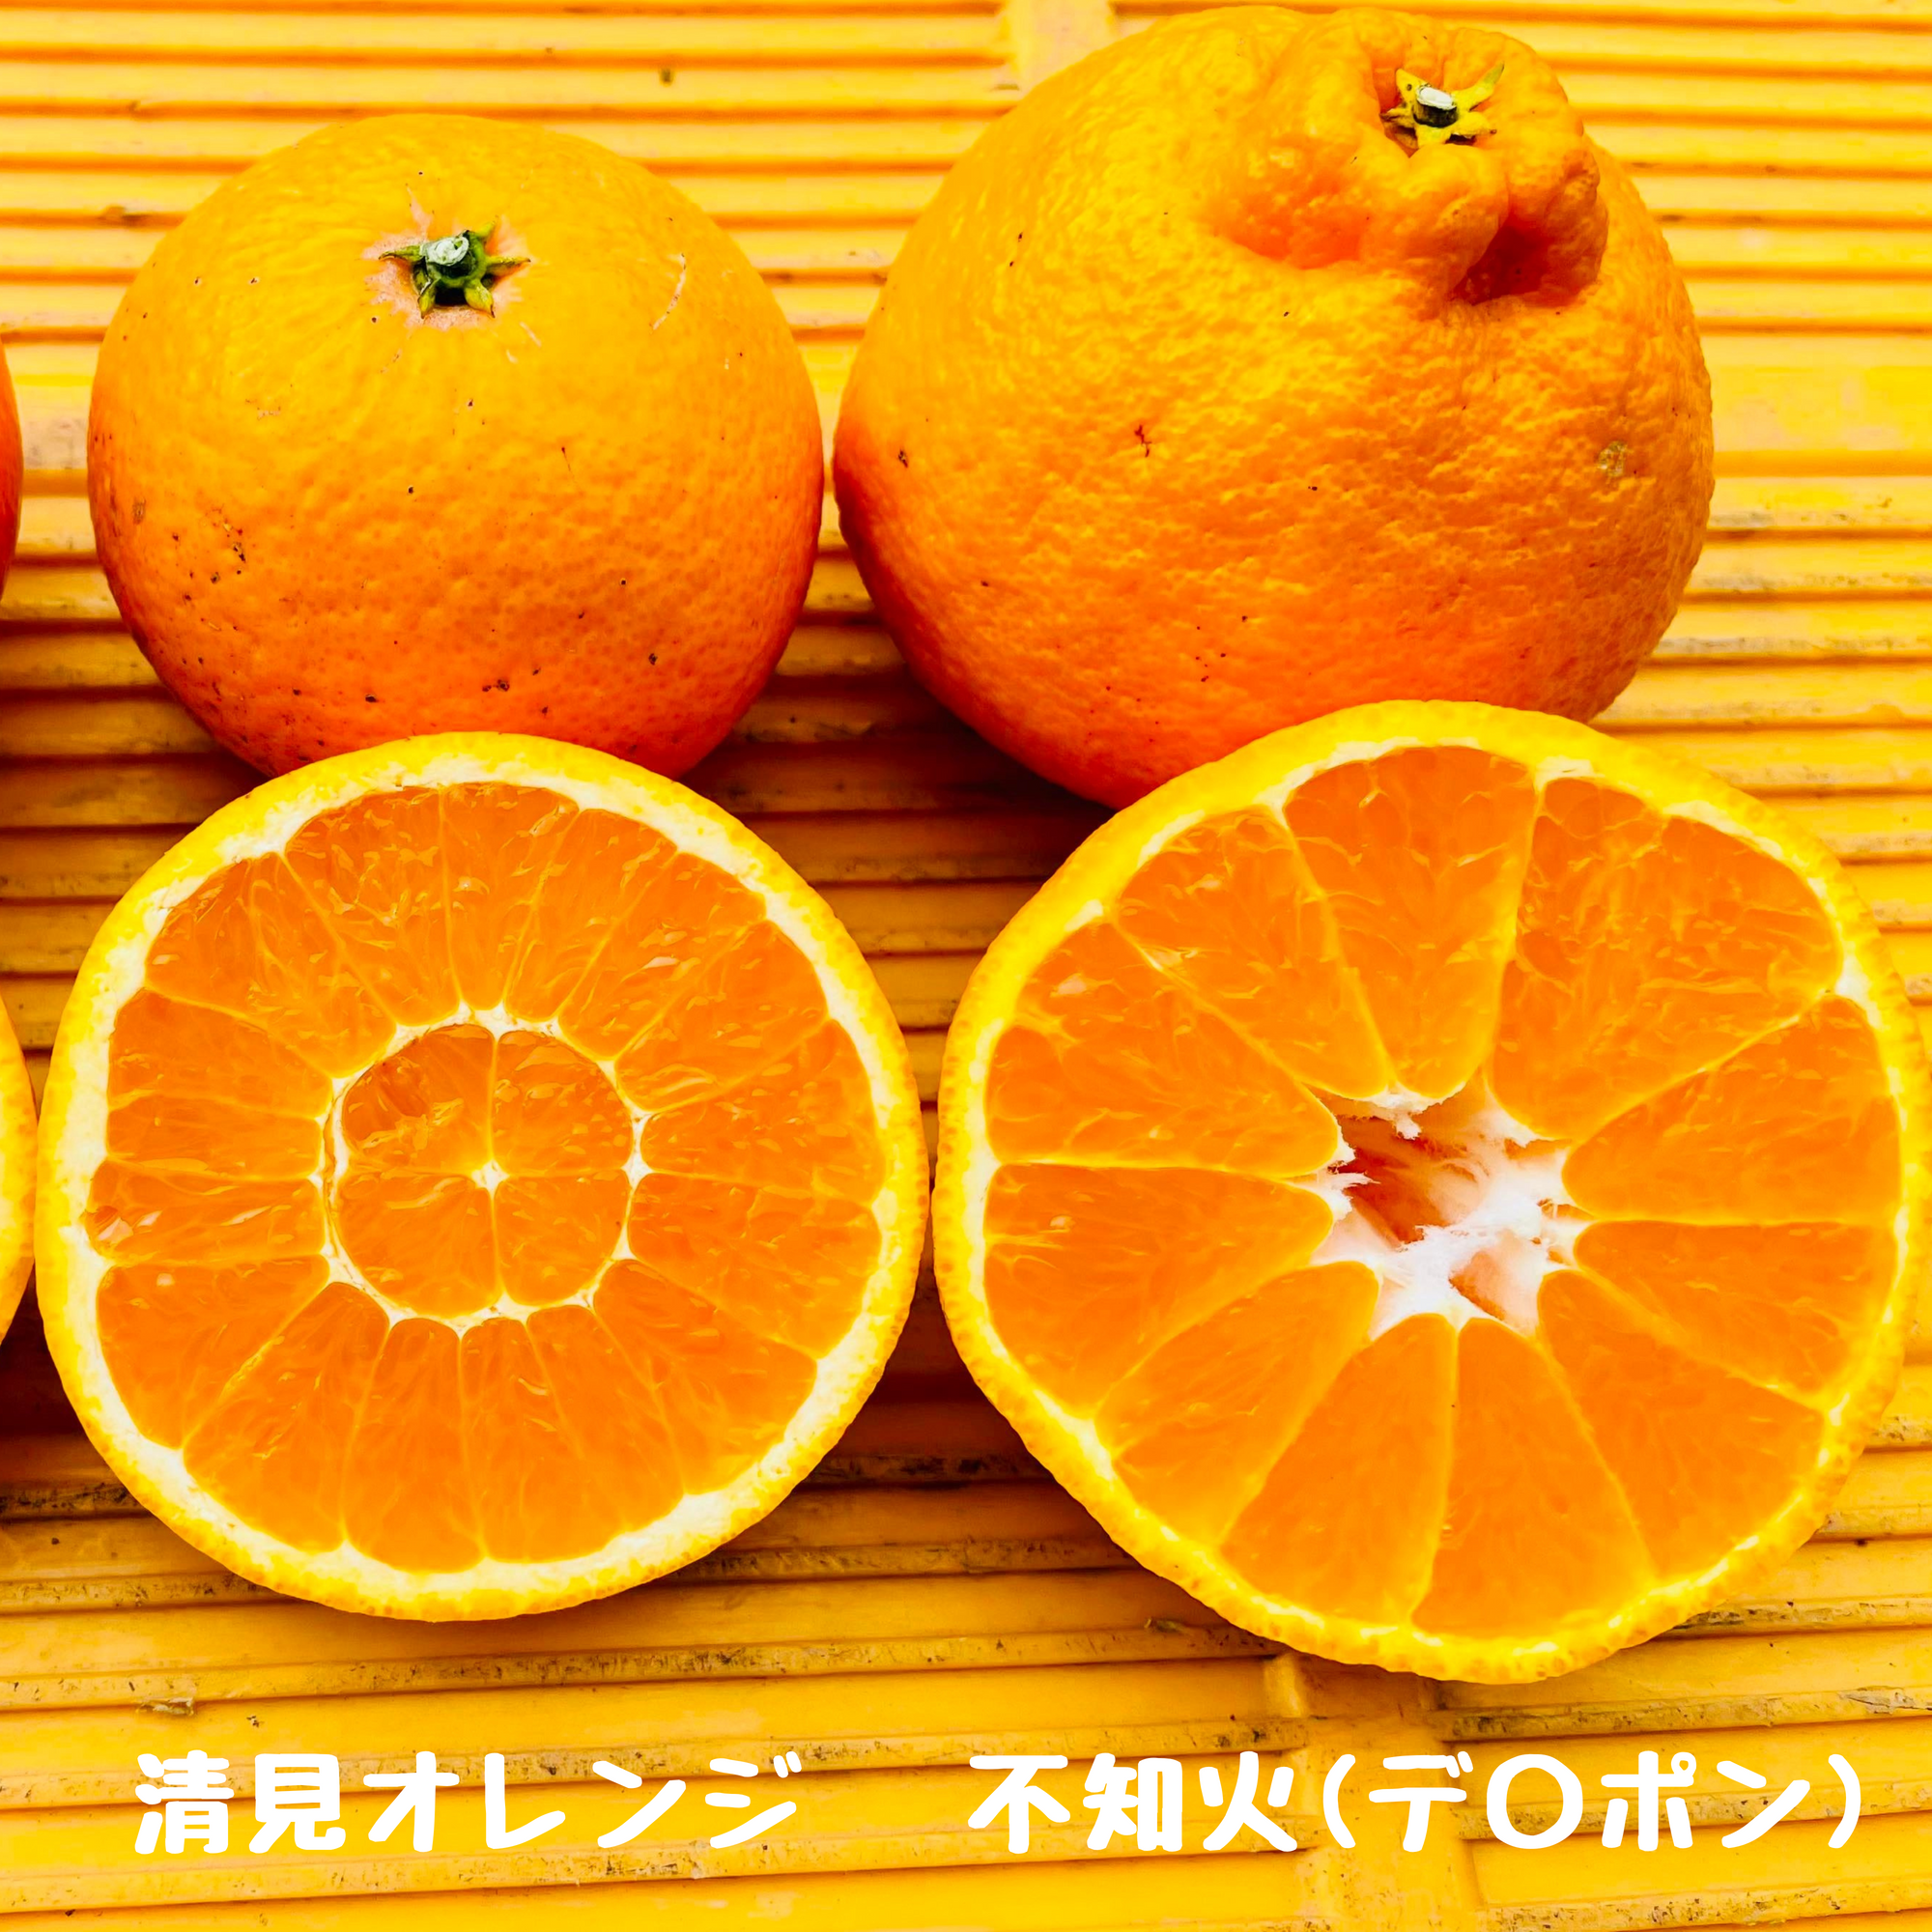 清見オレンジ 10キロ